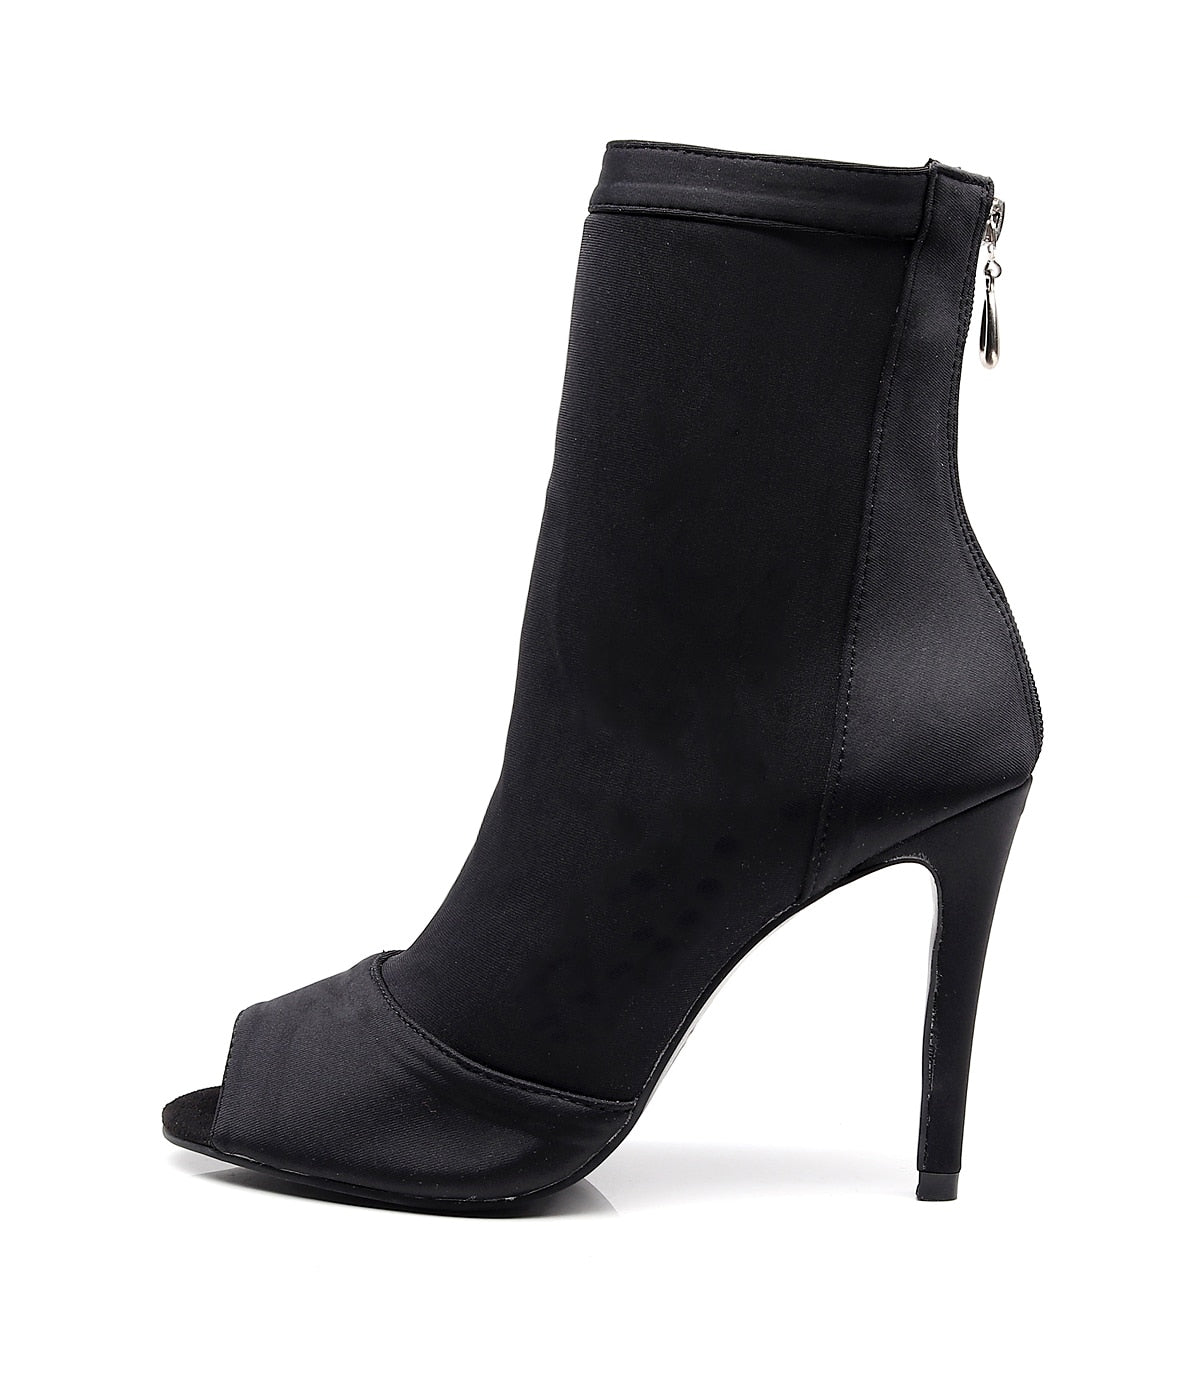 Chaussures Bottines Boots fantaisie de danse en cuir - avec ouverture aux orteils - pour femmes 3 coloris disponibles: noir, rouge, bleu - Talons personnalisables de 7.5 ou 10cm - Dance Store